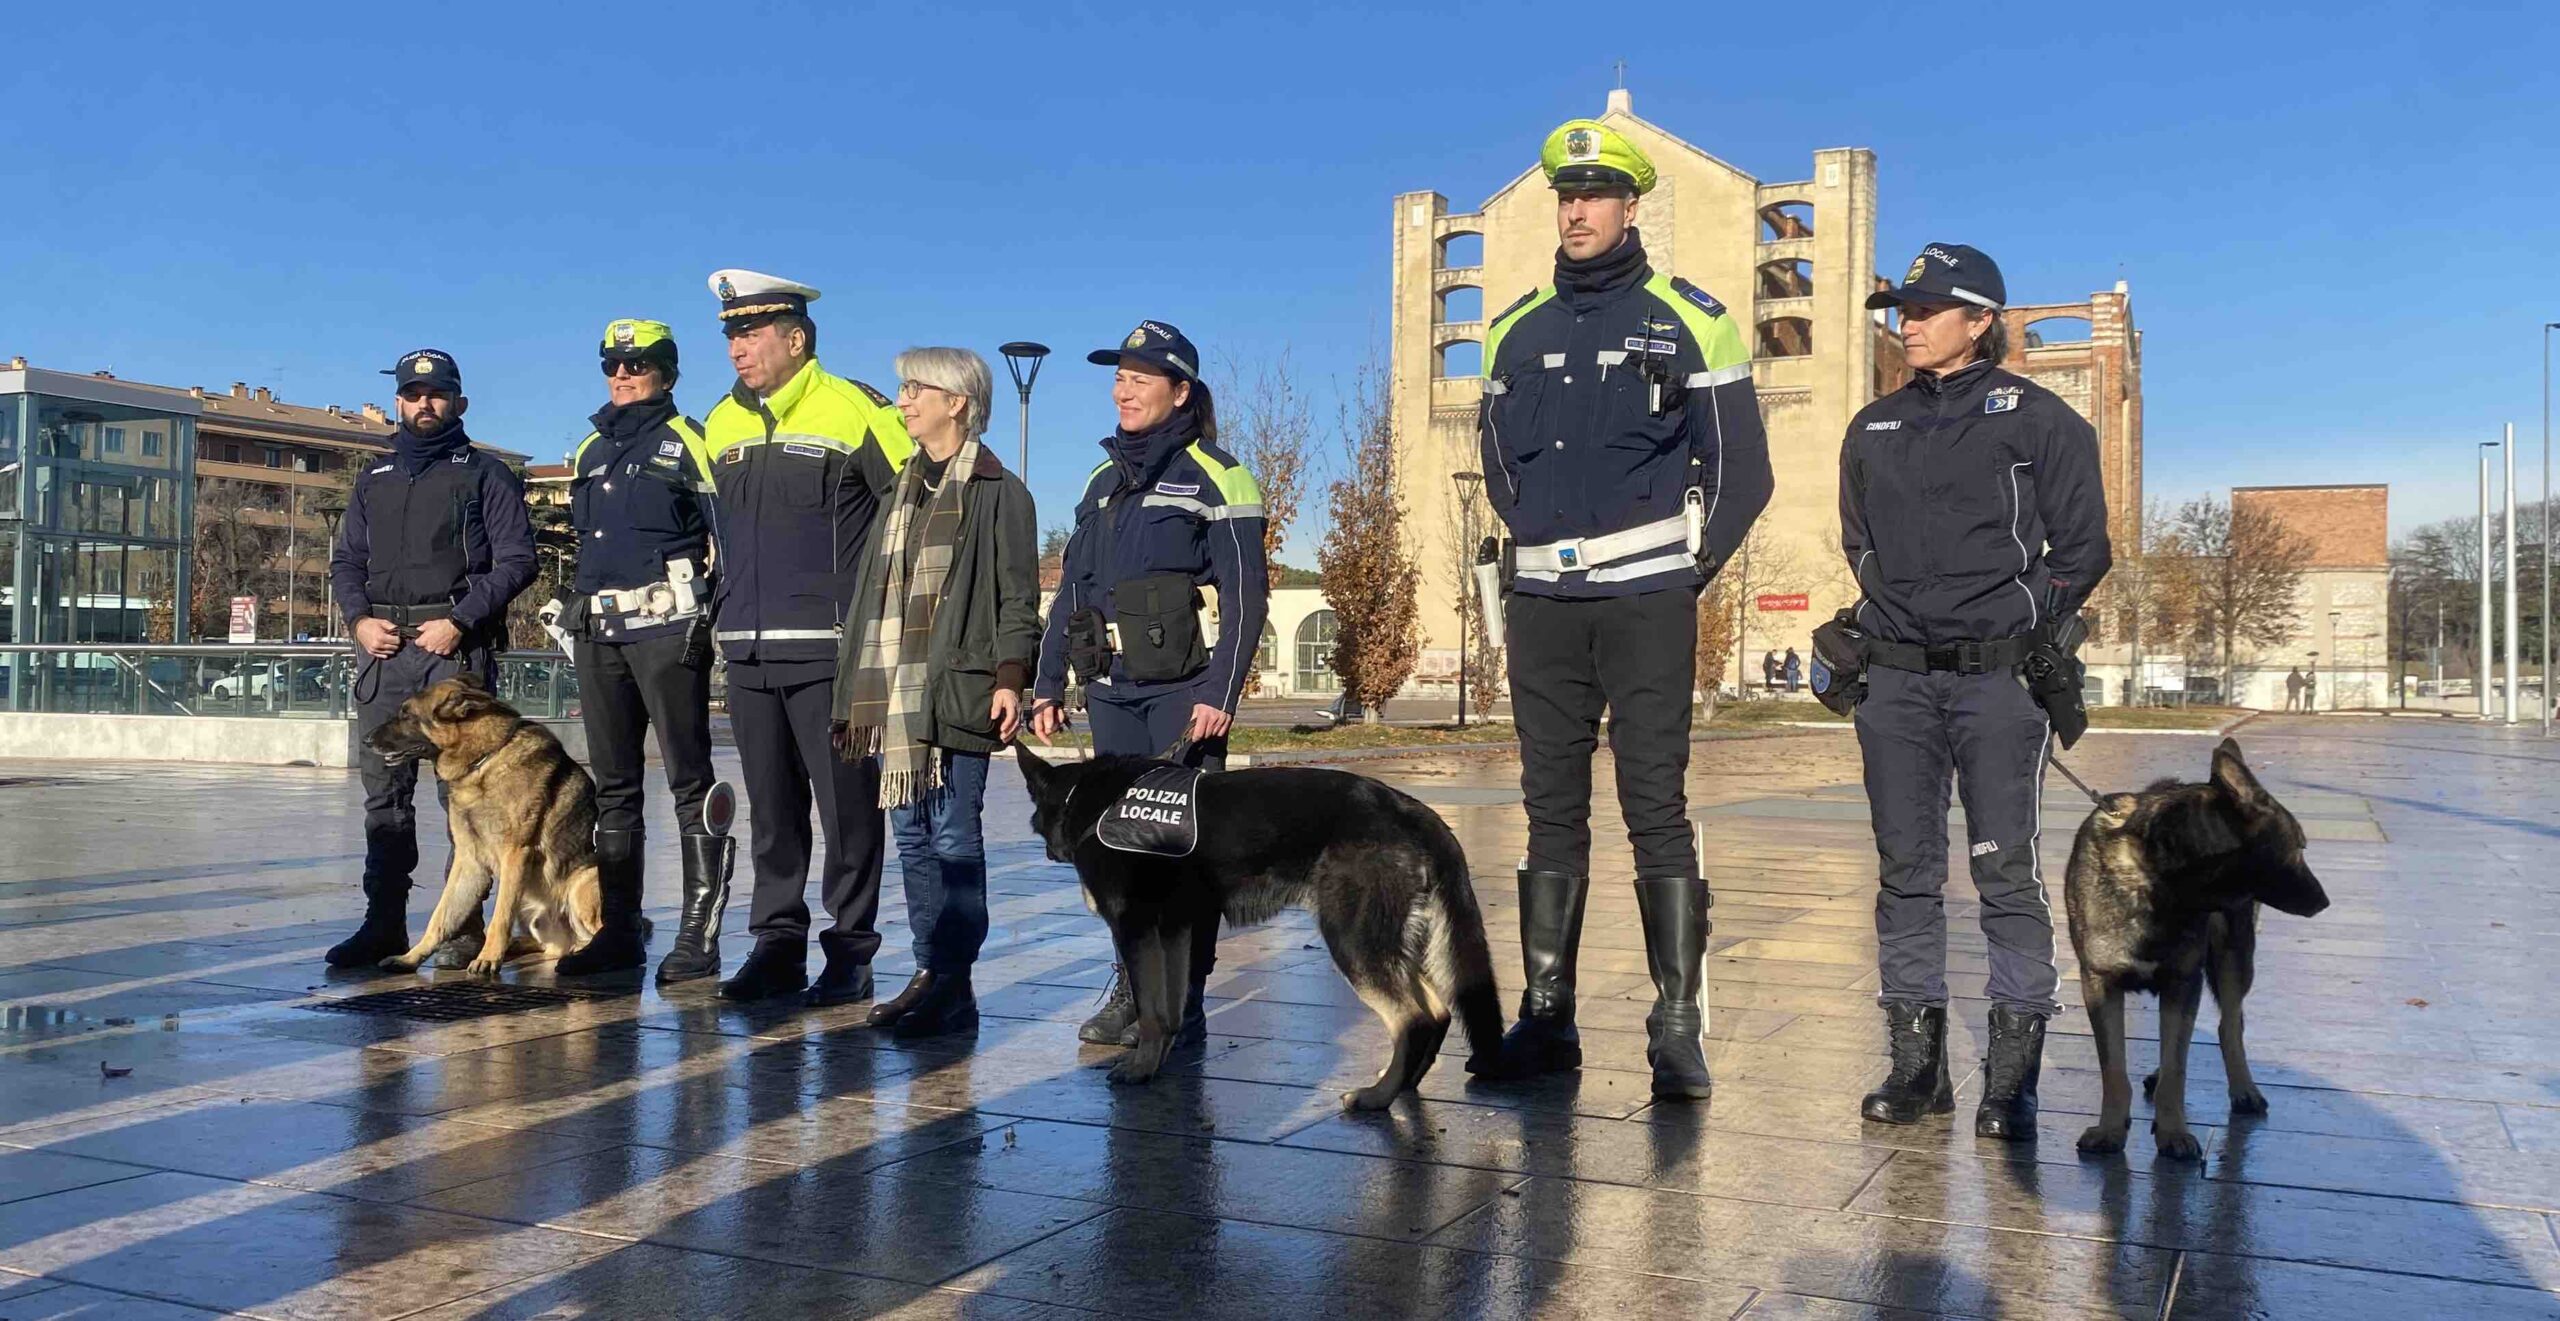 Entra in servizio Rio, il terzo cane dell’Unità cinofila del Comune di Verona